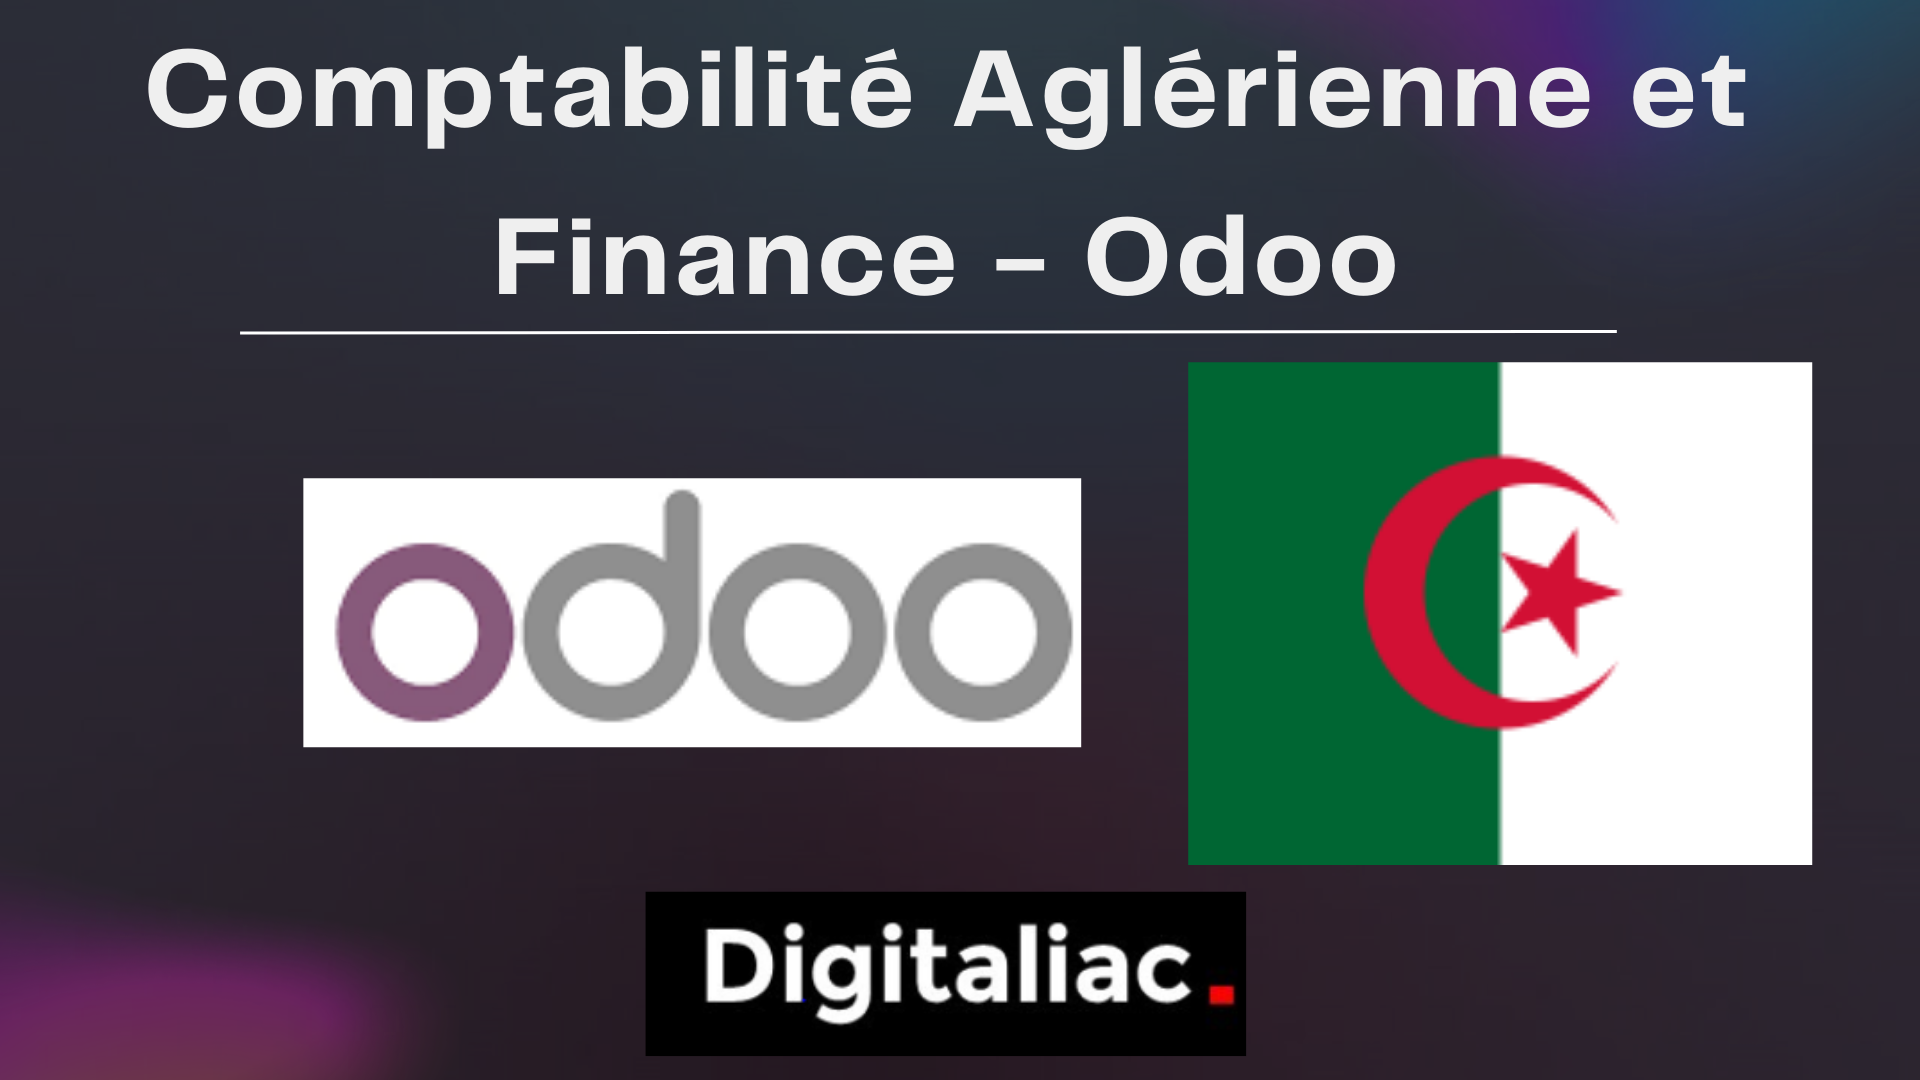 Comptabilité et Finance Algérie - Odoo